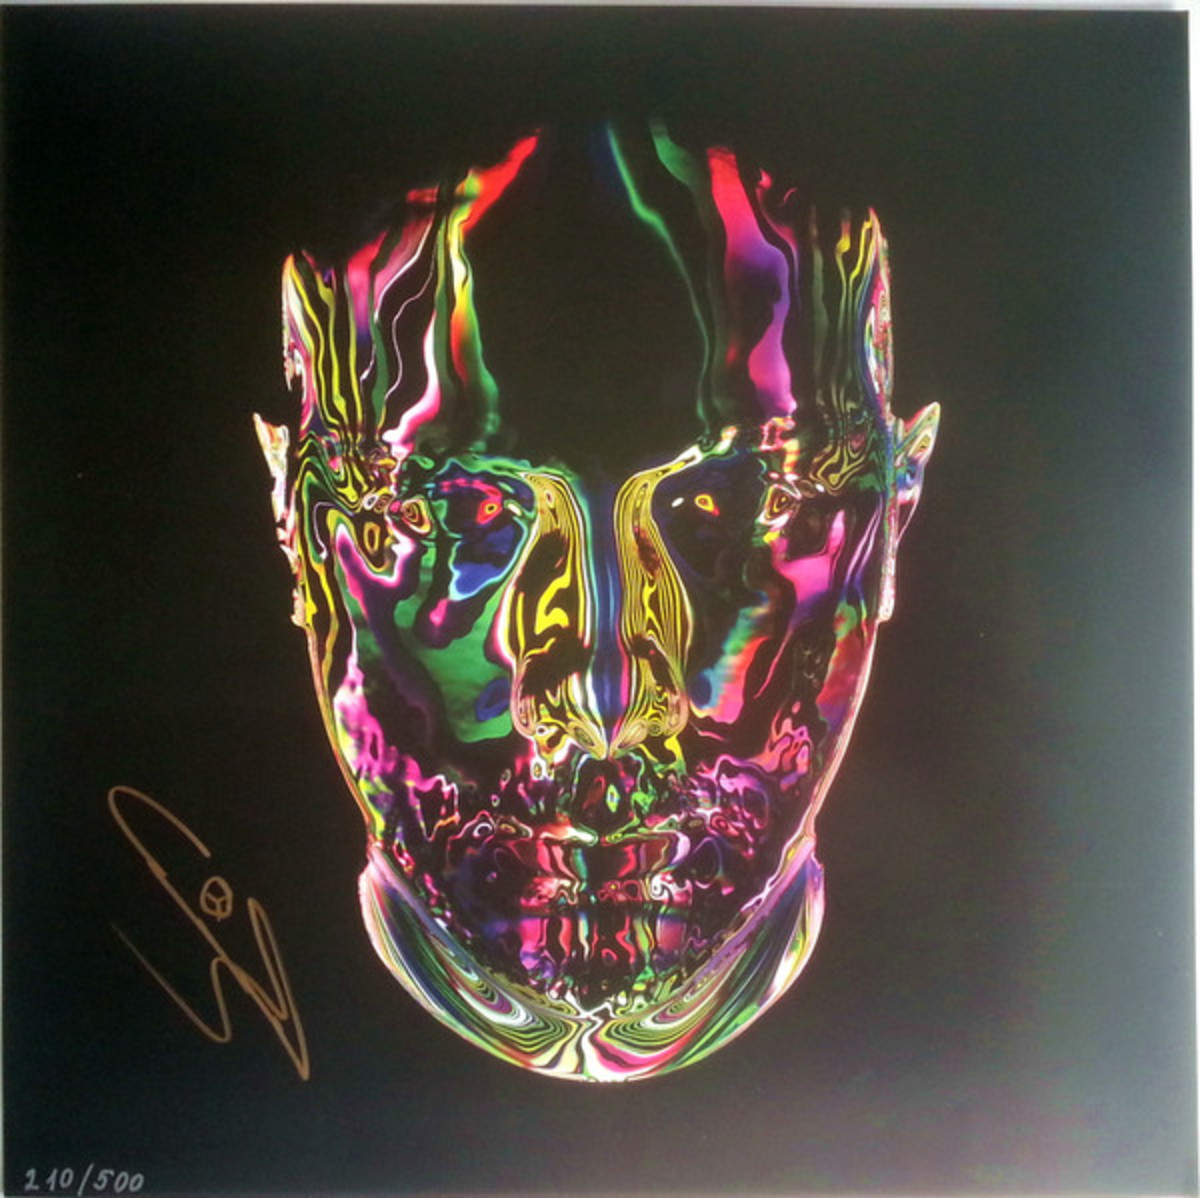 One of 500 rare vinyl copies of Opus, Eric Prydz's debut studio album, pressed in 2016.